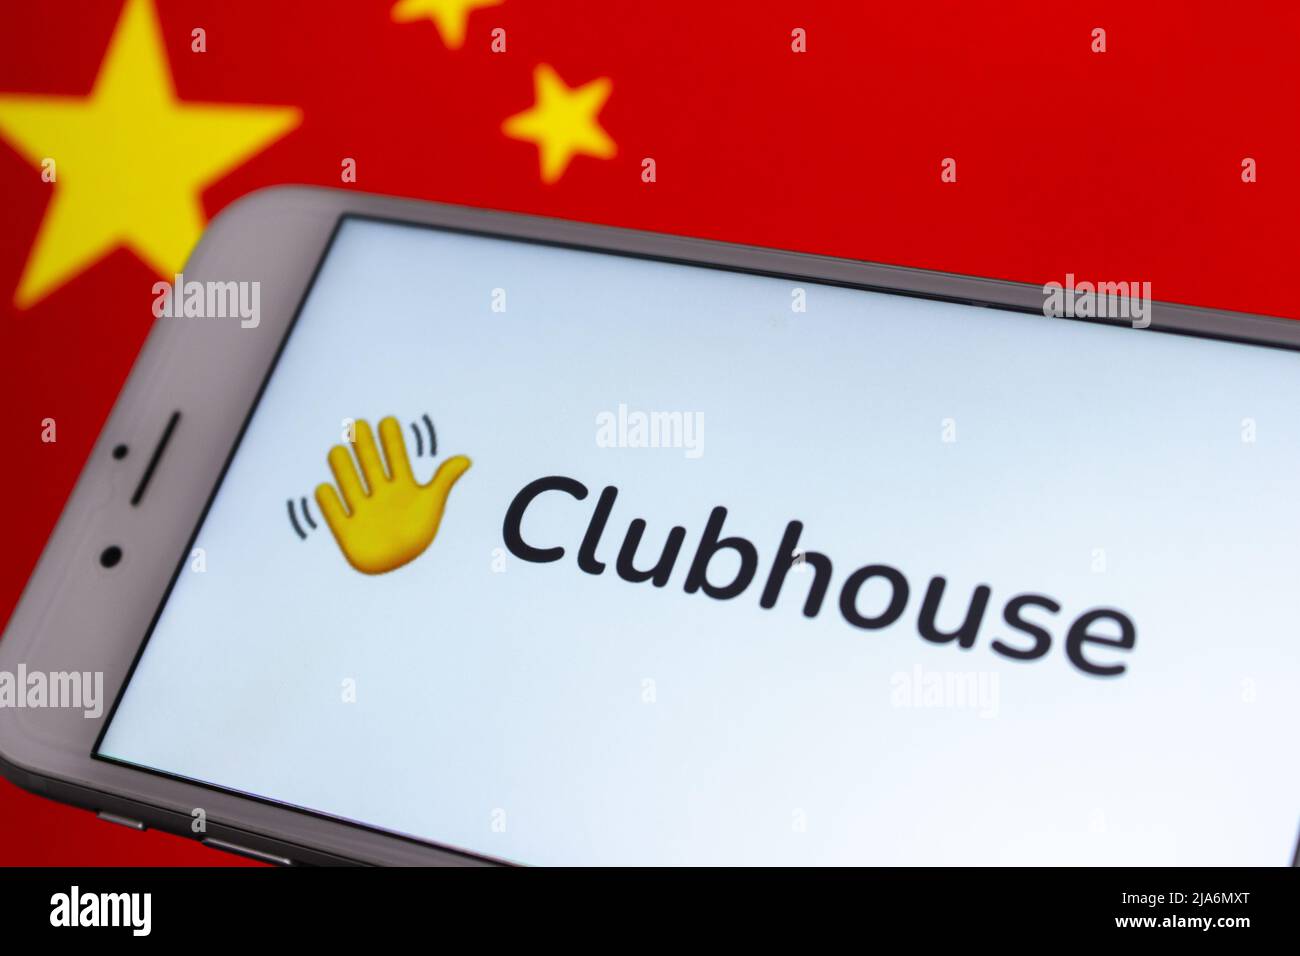 Kumamoto, JAPON - Fév 15 2021 : application Clubhouse sur l'écran de l'iPhone avec arrière-plan drapeau chinois. L'application Clubhouse aurait été interdite en Chine en 2021 Banque D'Images